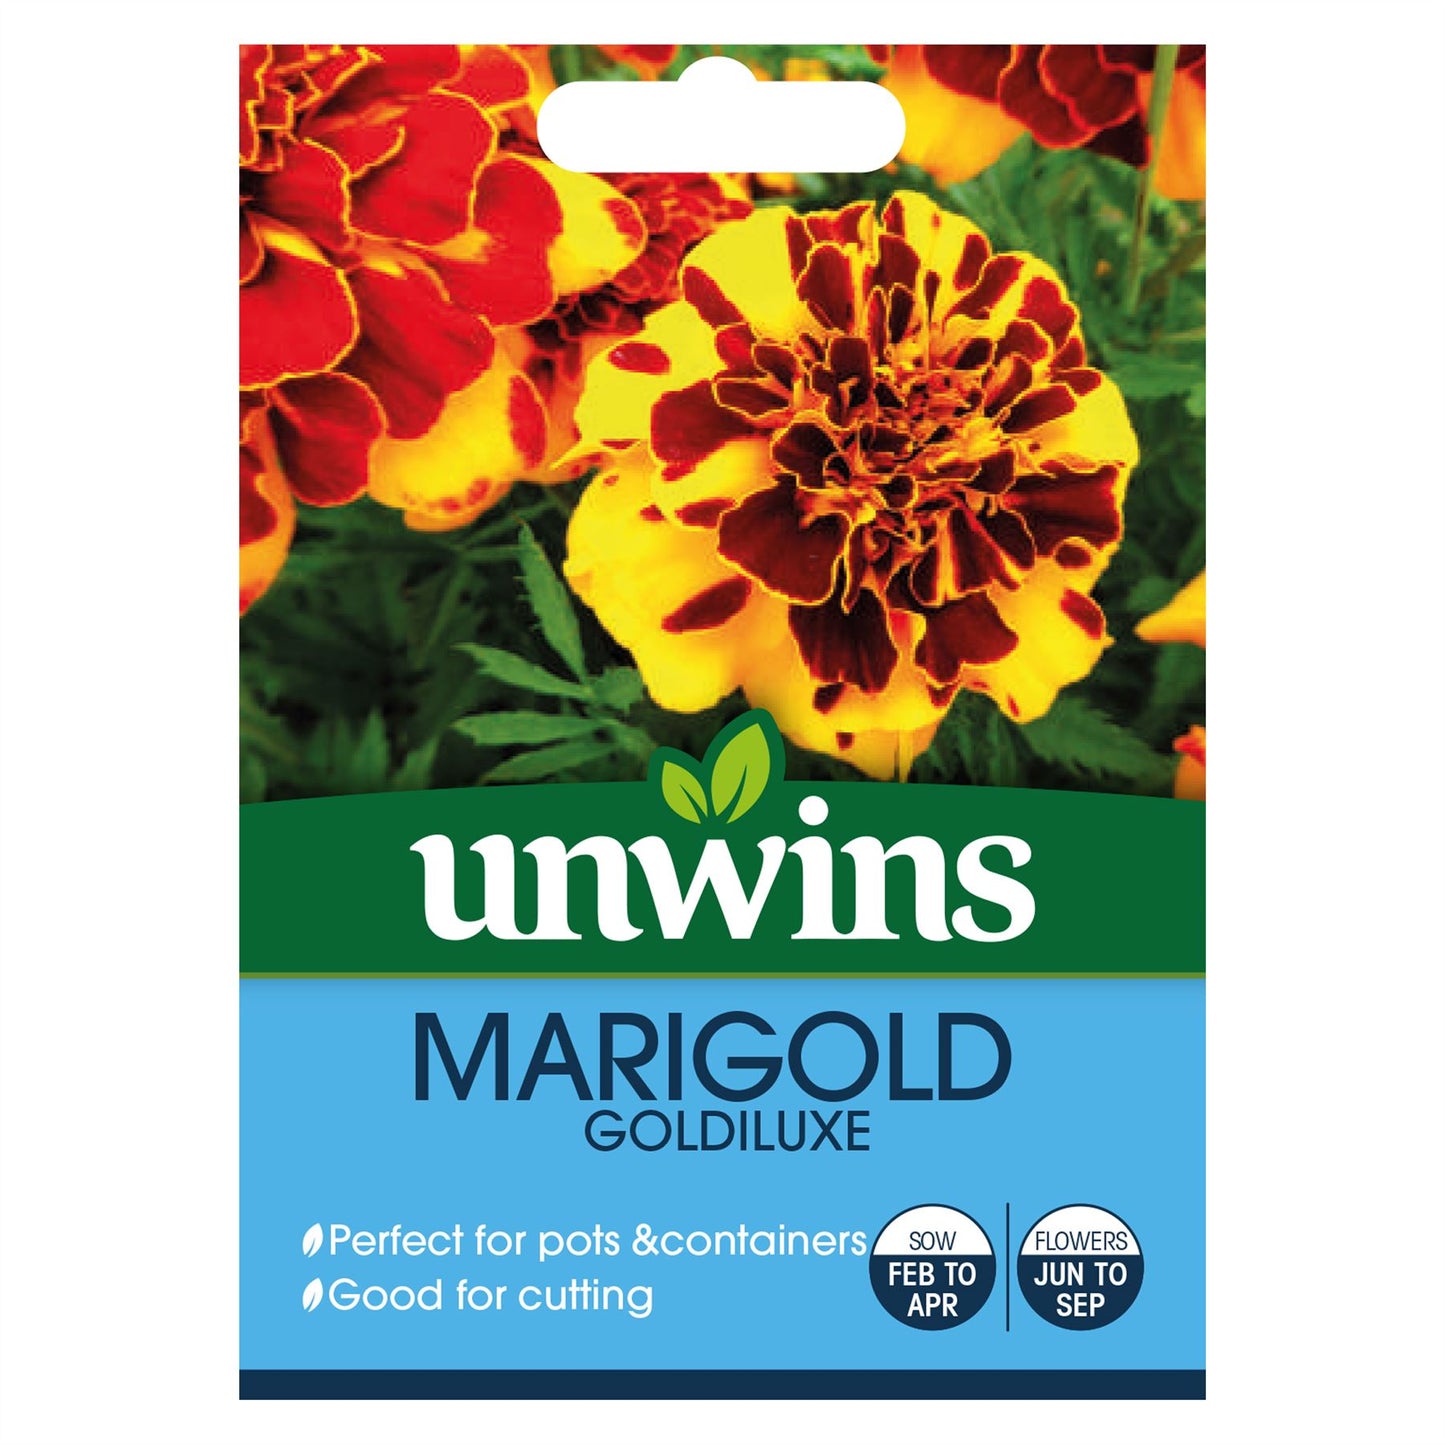 Unwins - Flower - Marigold Goldiluxe Seeds